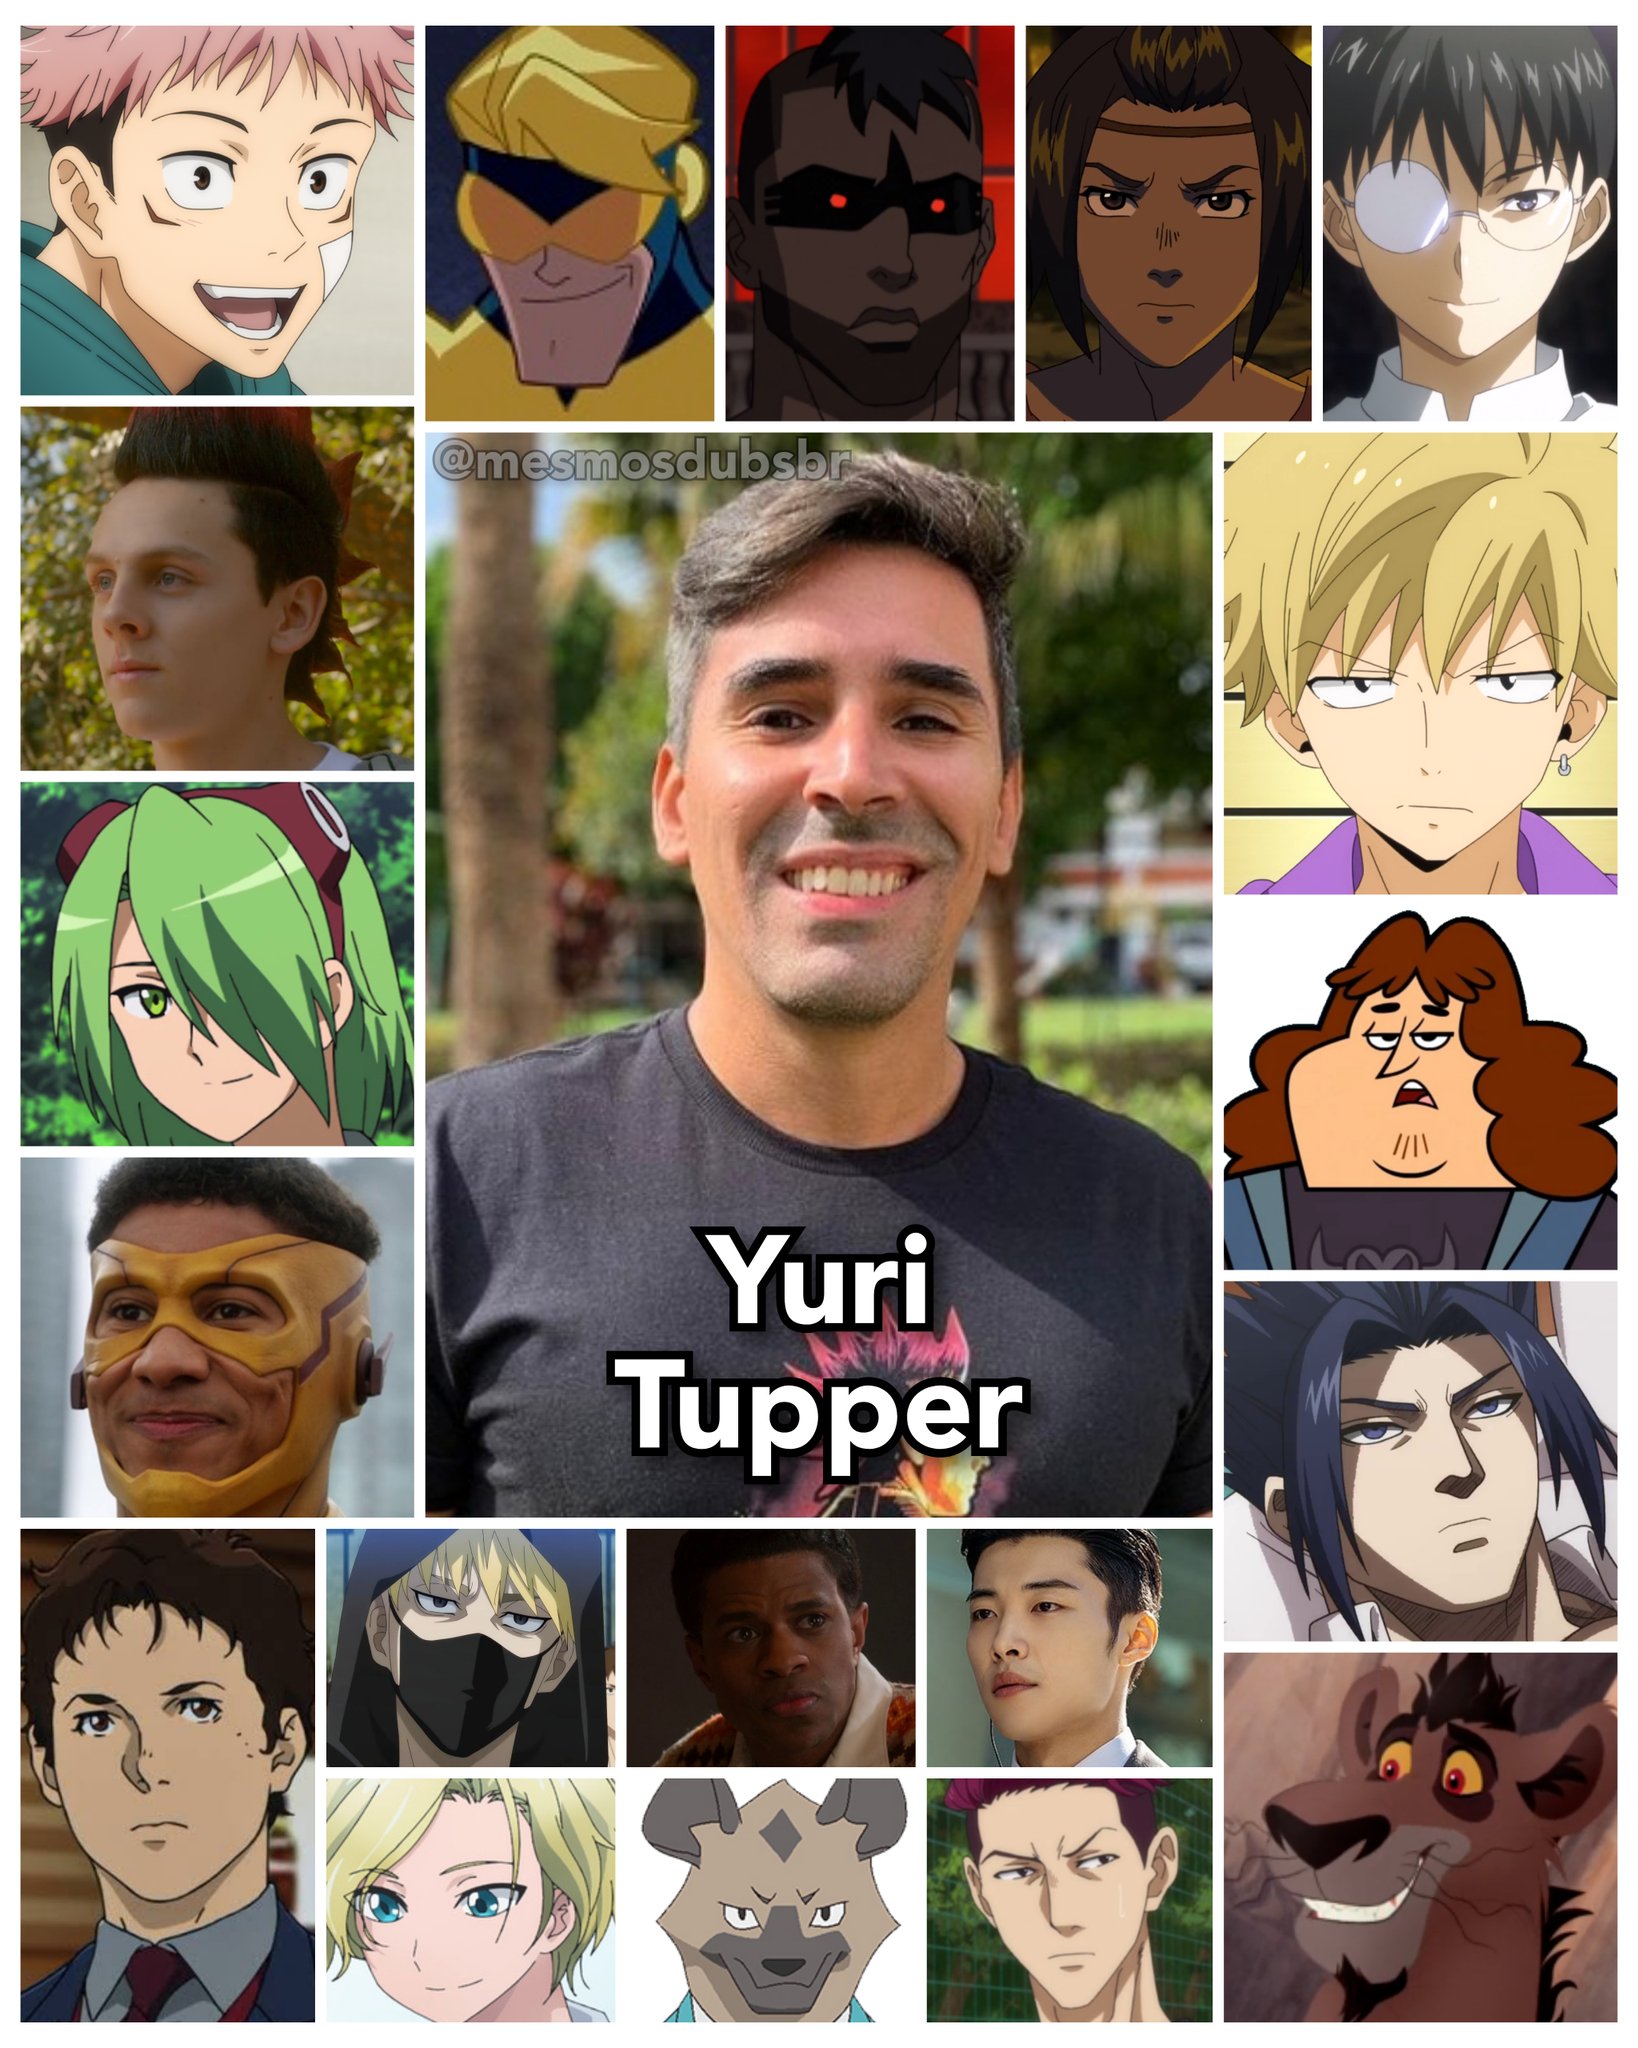 Personagens Com os Mesmos Dubladores! on X: RIP garganta do José (e também  RIP José) (Anime: Yu-Gi-Oh!) (corte emprestado de cortesia do Shinzo Vai  Voltar no )  / X